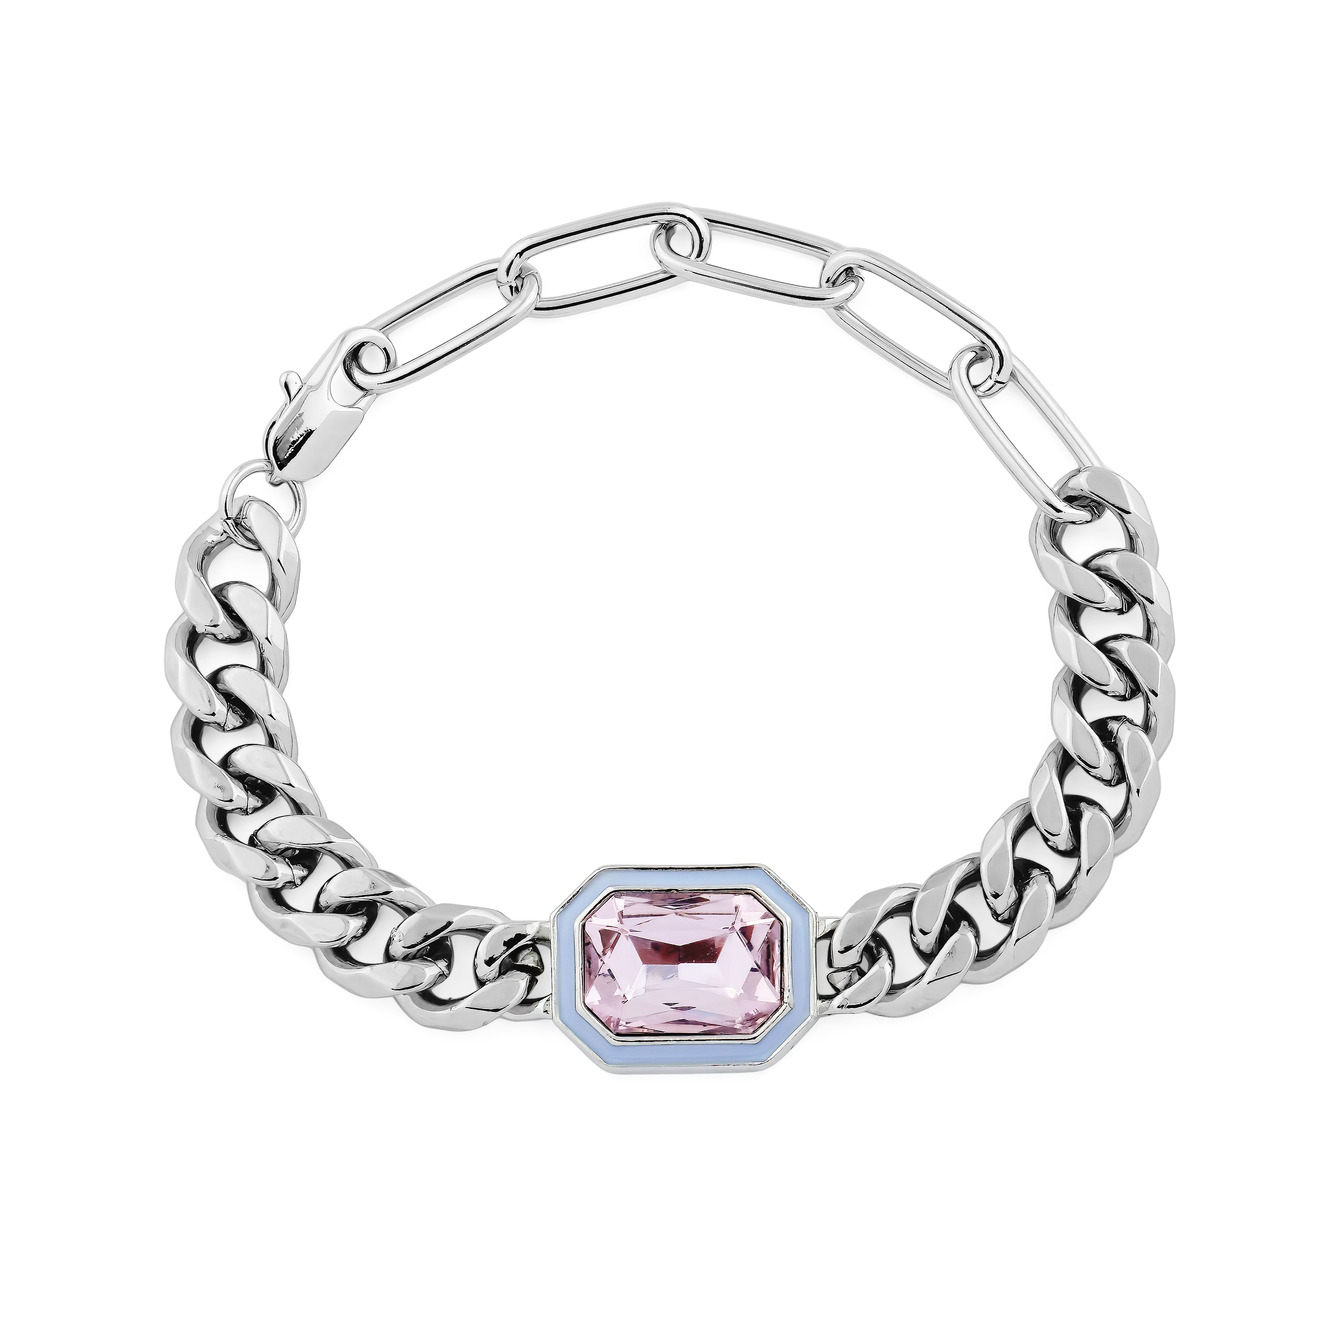 Herald Percy Серебристый браслет из цепи крупного плетения с розовым кристаллом herald percy серебристая цепочка с розовым кристаллом